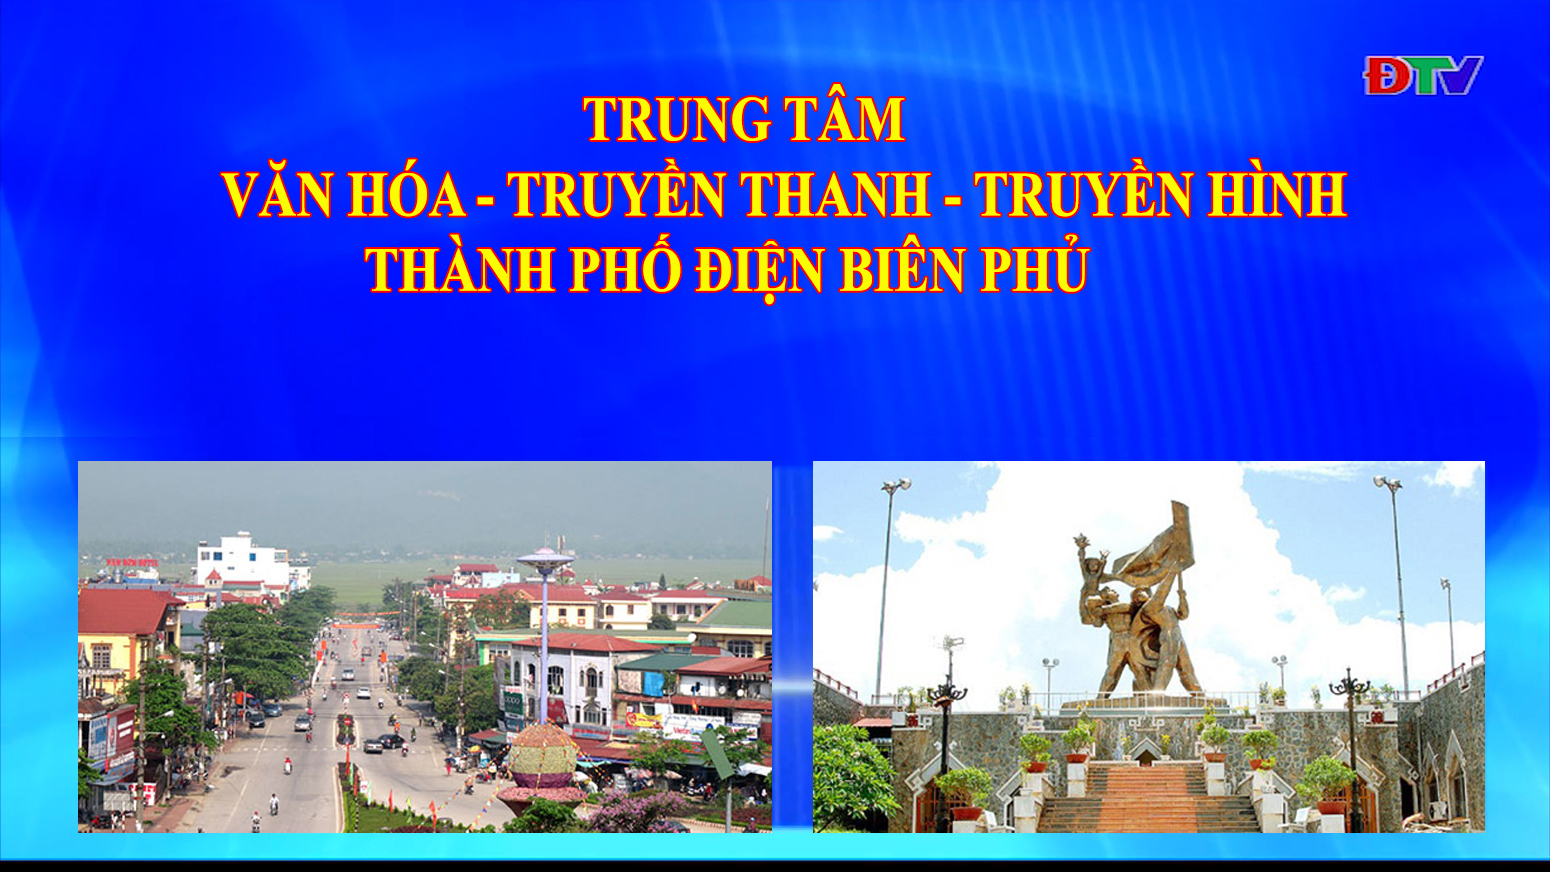 Trung tâm VH-TTTH thành phố Điện Biên Phủ (Ngày 23-8-2022)